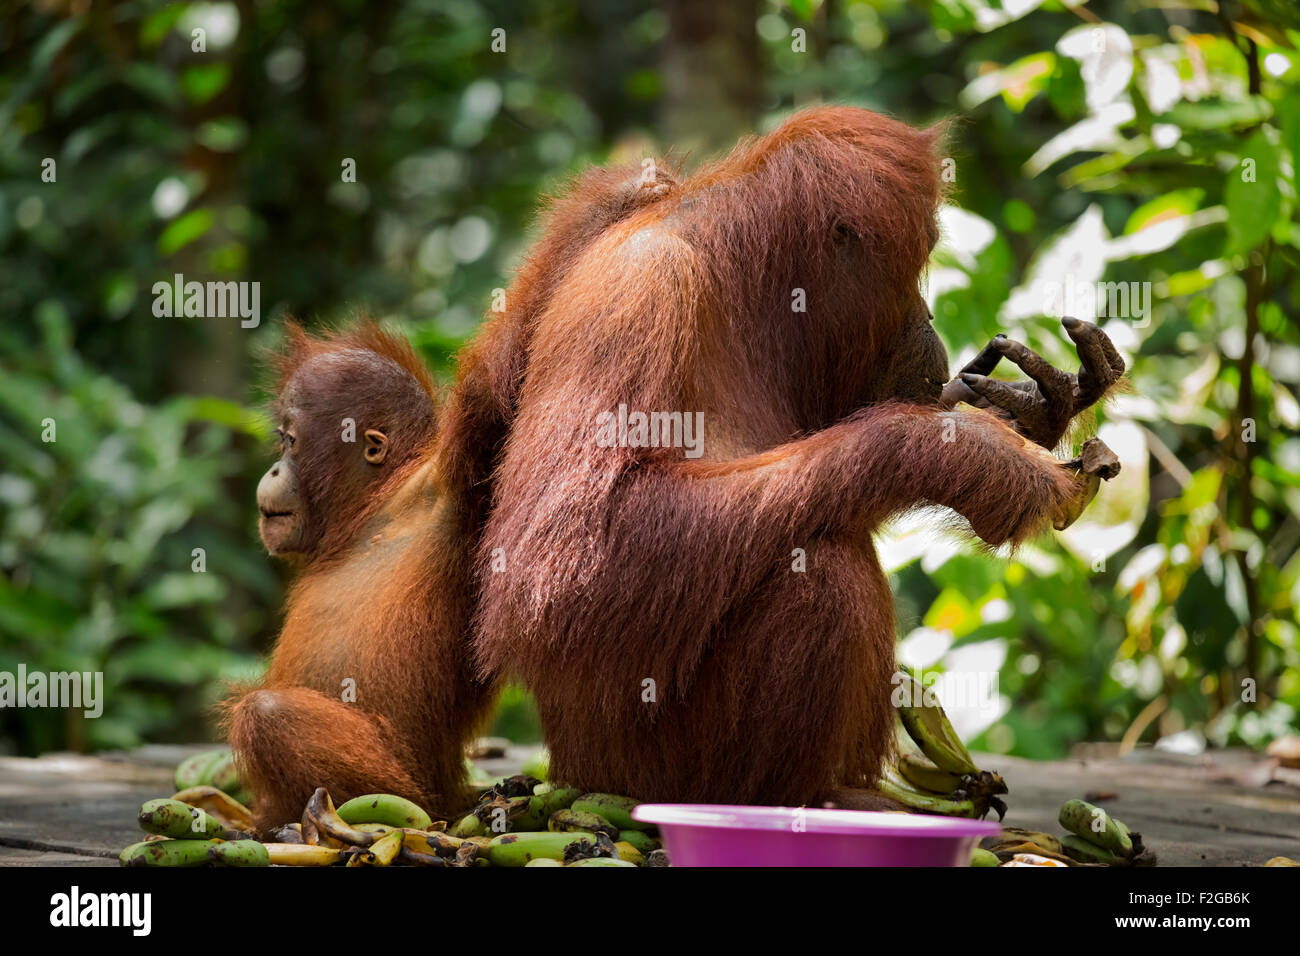 La mère et l'enfant de l'orang-outan à la station d'alimentation Banque D'Images